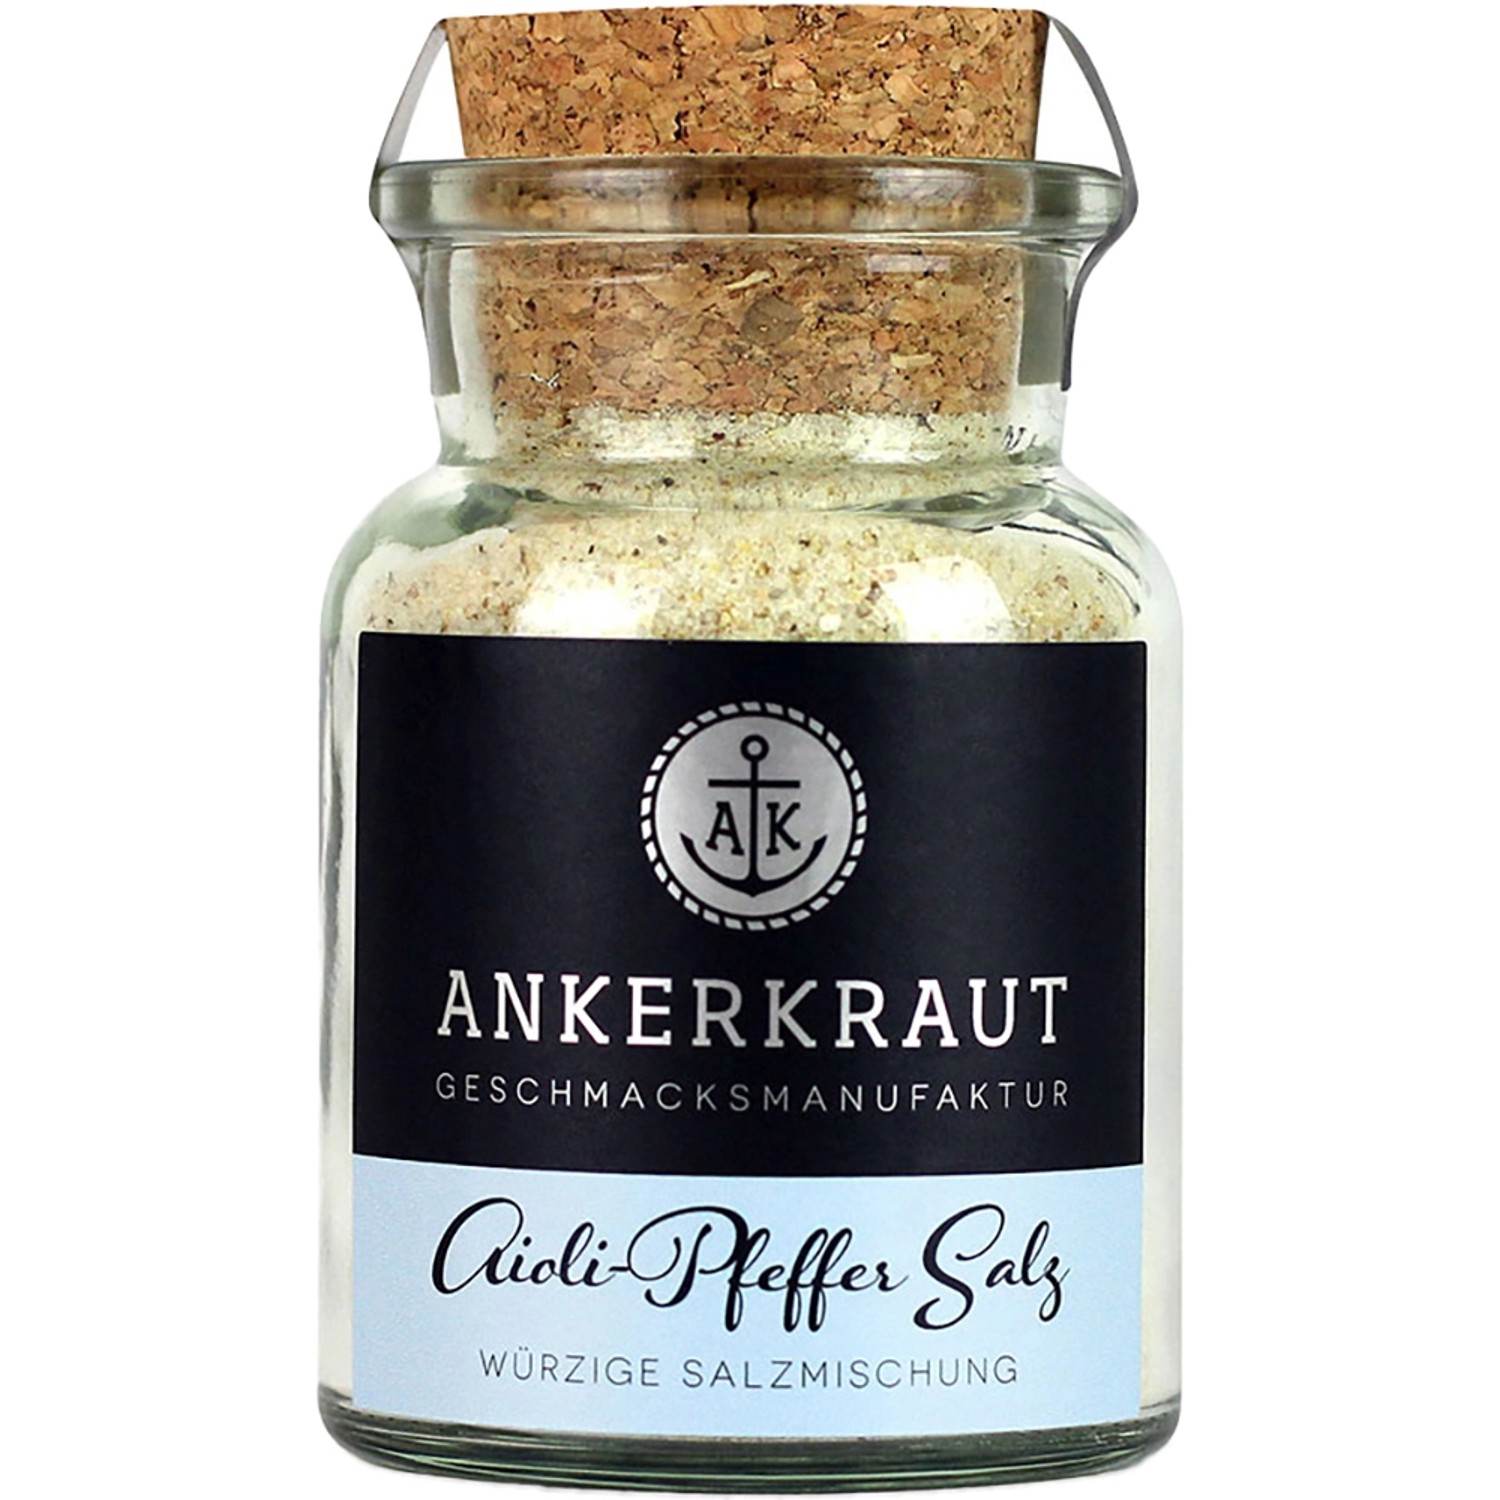 Ankerkraut Aioli-Pfeffer Salz im Korkglas 155g von Ankerkraut